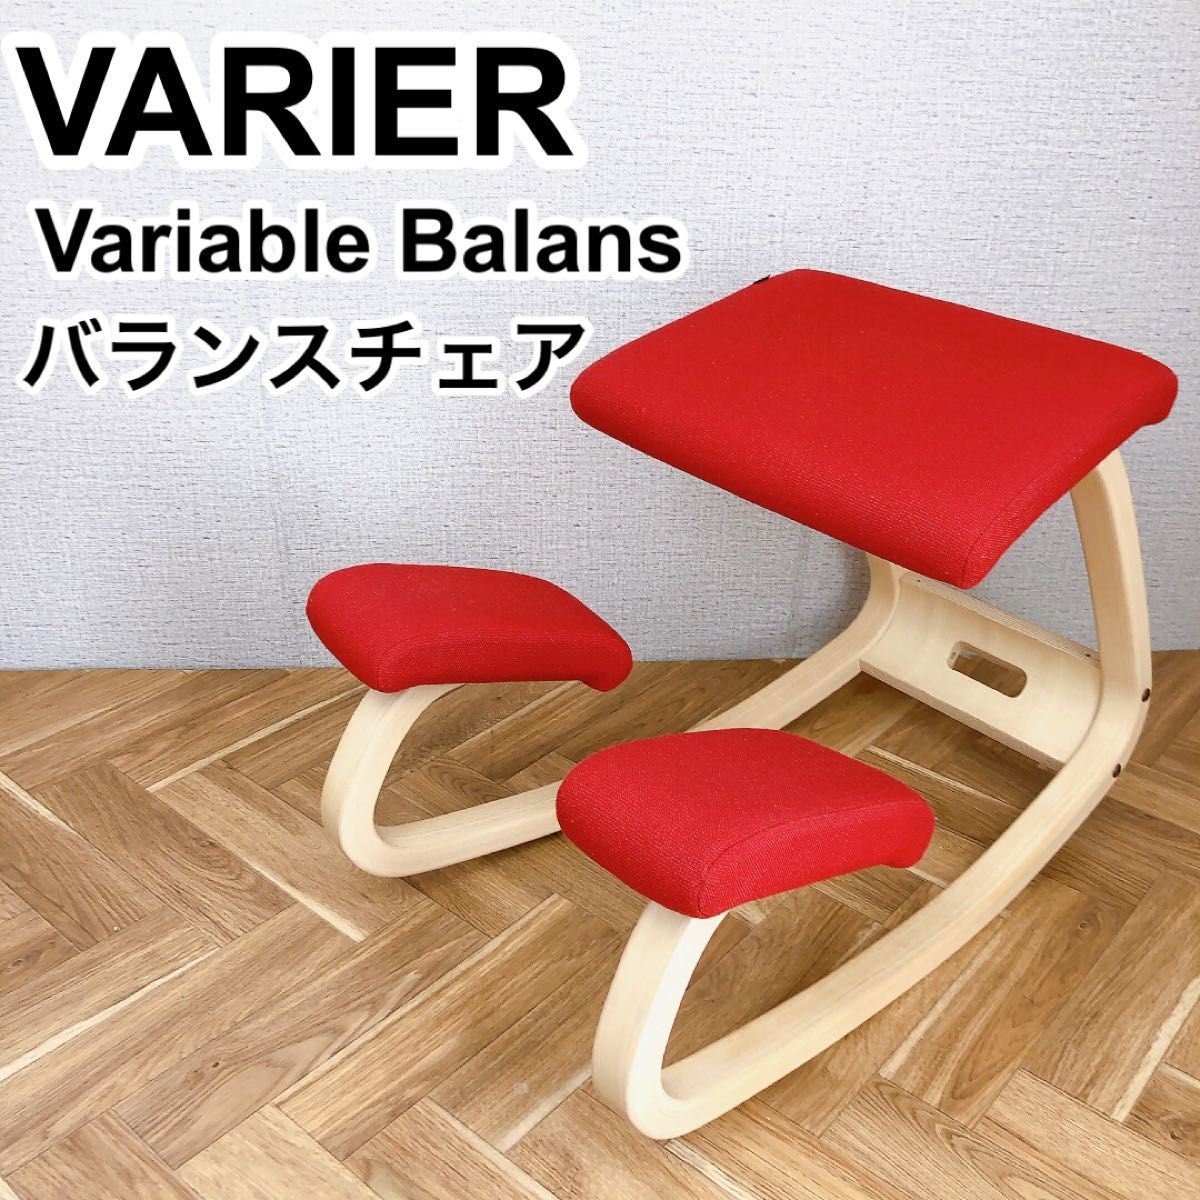 Varier ヴァリエール Variable Balans バリアブルバランス バランス